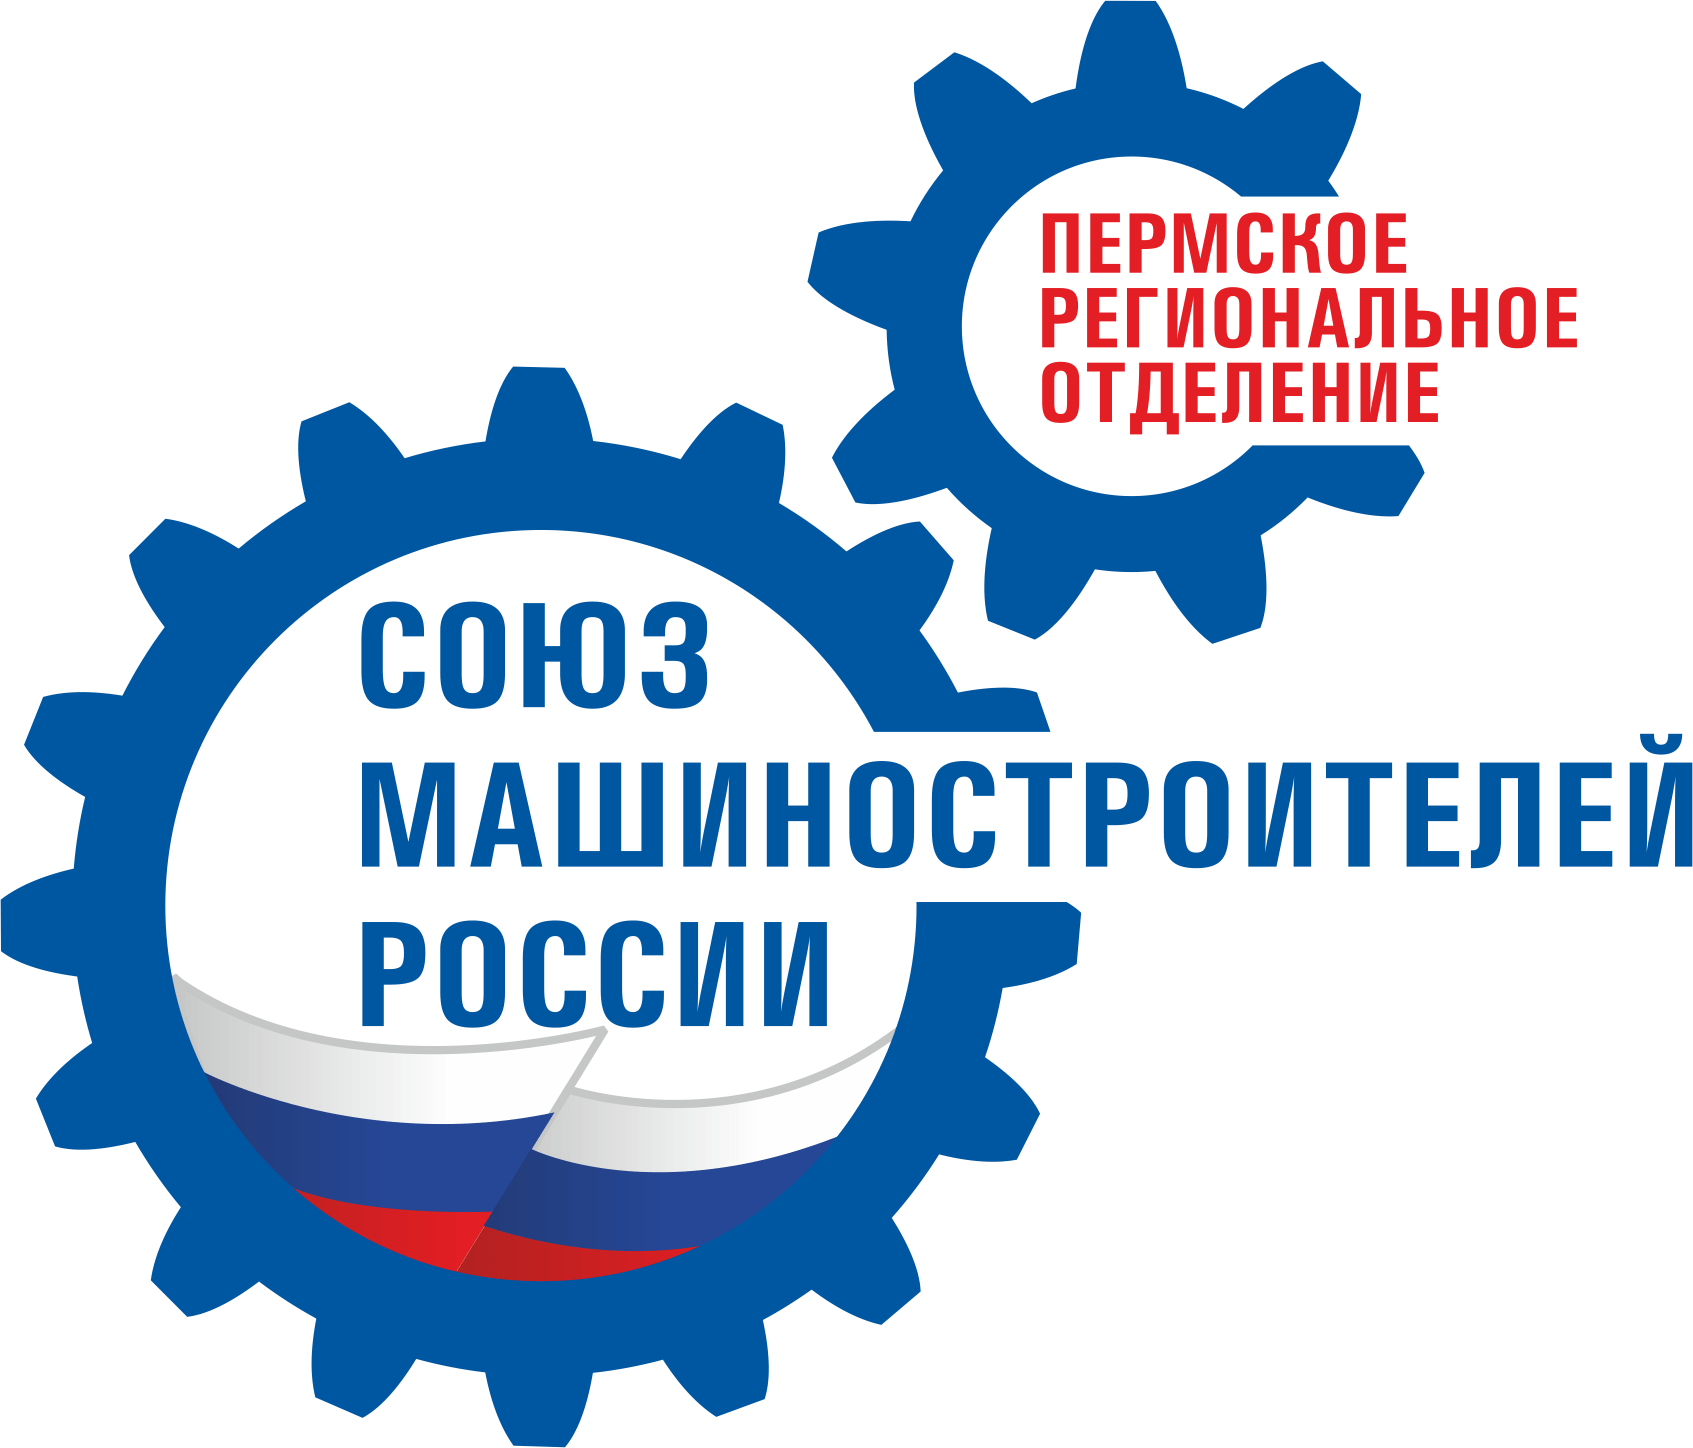 Сайт Союза машиностроителей России